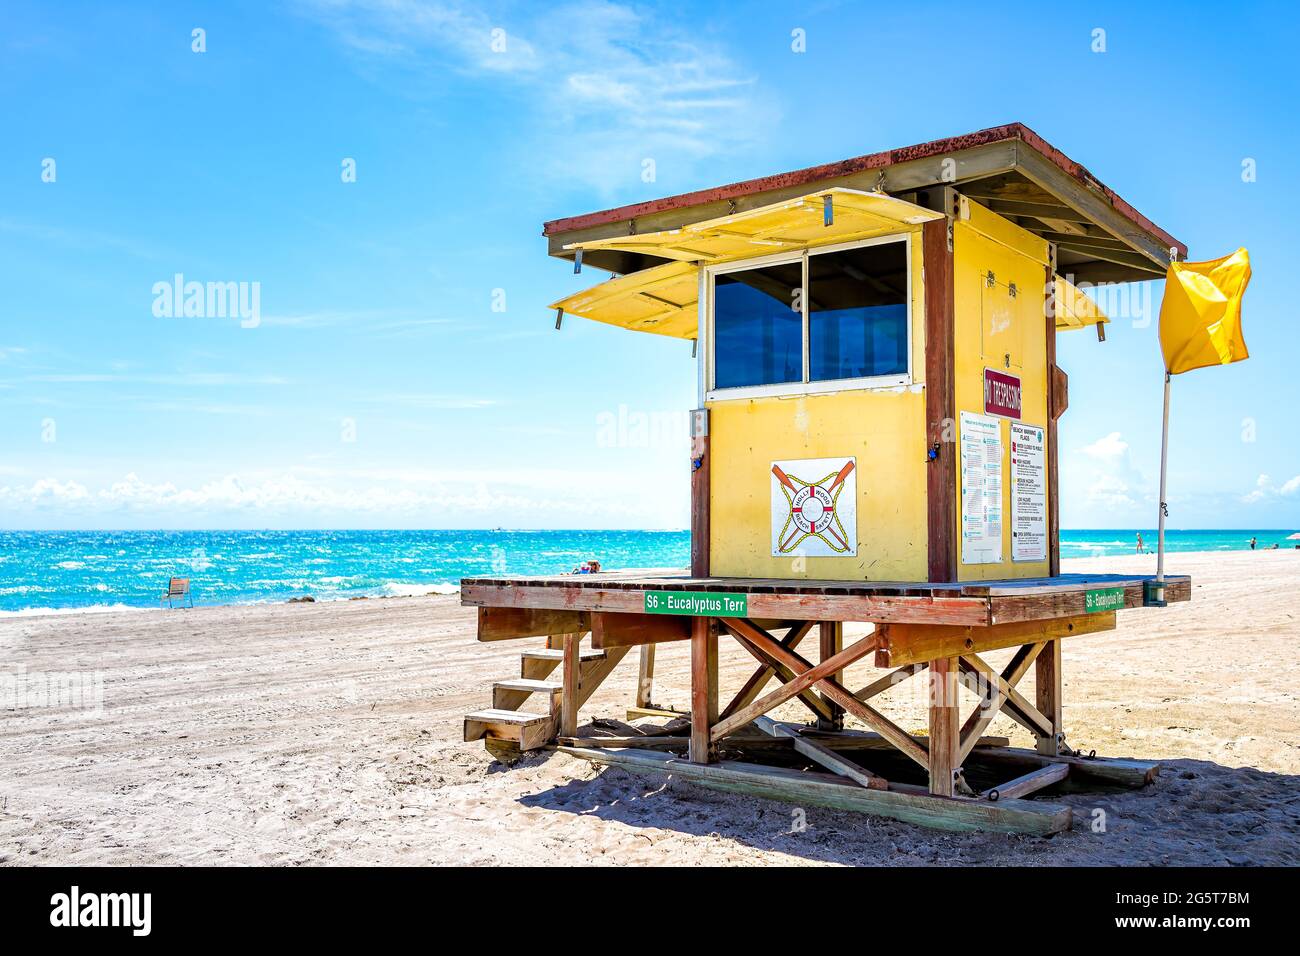 Hollywood, États-Unis - 6 mai 2018 : cabane de construction de sauveteurs le long de la côte océanique de Miami en Floride pendant la journée avec des gens sur le sable et l'eau turquoise Banque D'Images